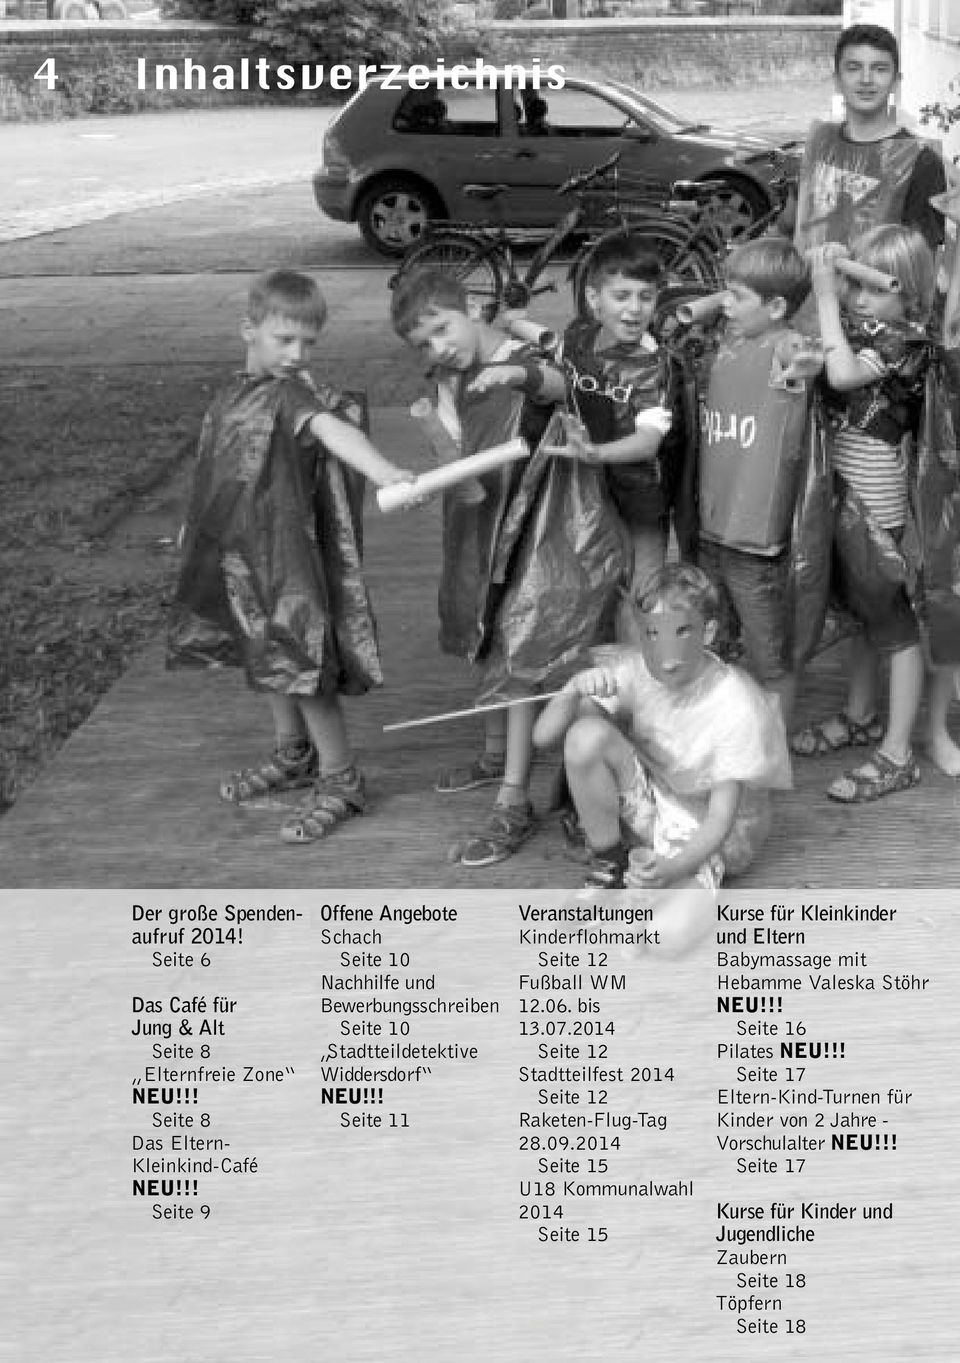 !! Seite 11 Veranstaltungen Kinderflohmarkt Seite 12 Fußball WM 12.06. bis 13.07.2014 Seite 12 Stadtteilfest 2014 Seite 12 Raketen-Flug-Tag 28.09.